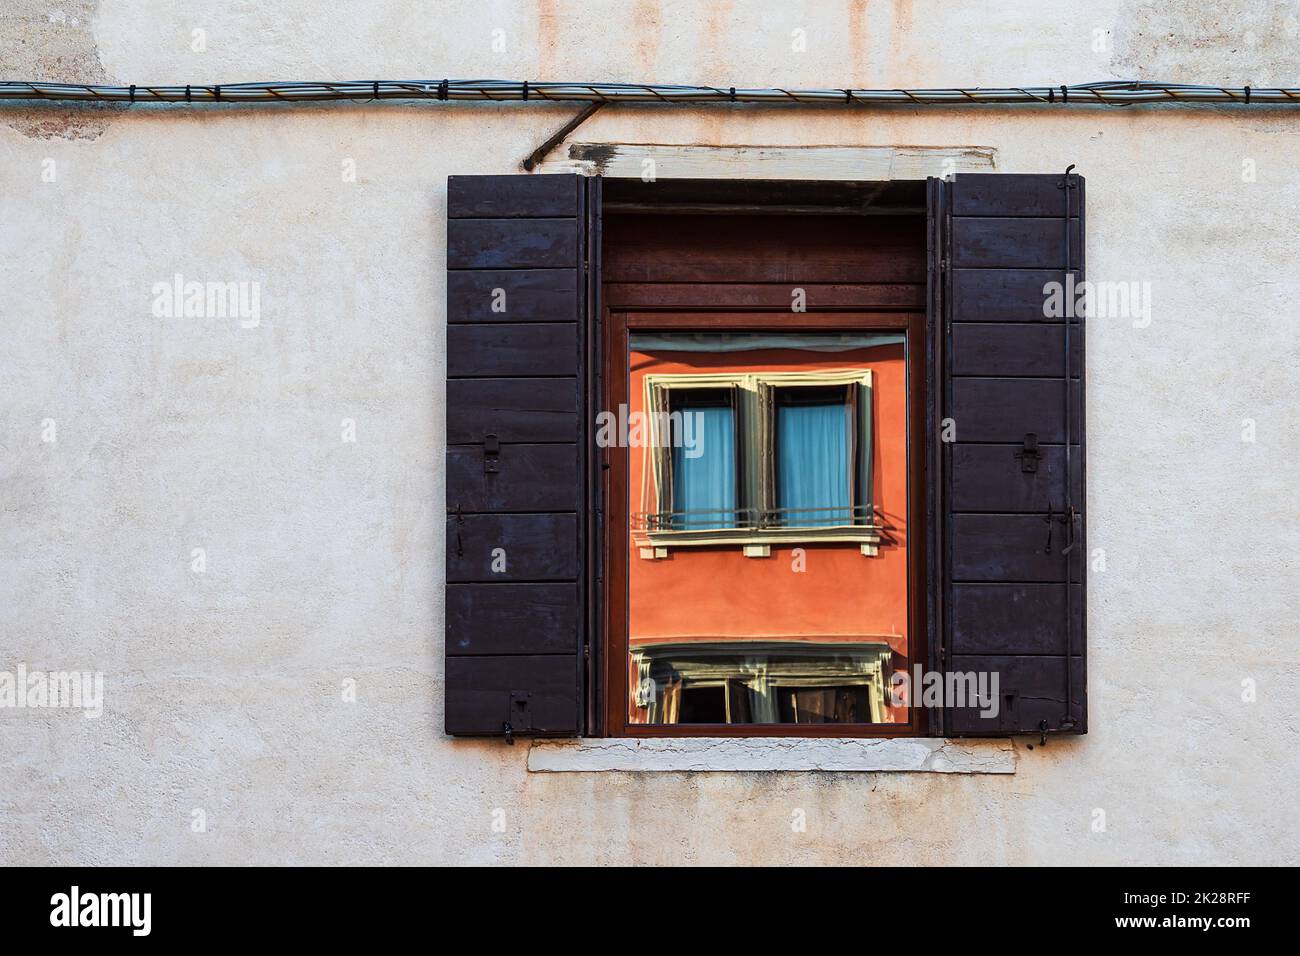 Specchiatura in una finestra storica a Venezia Foto Stock